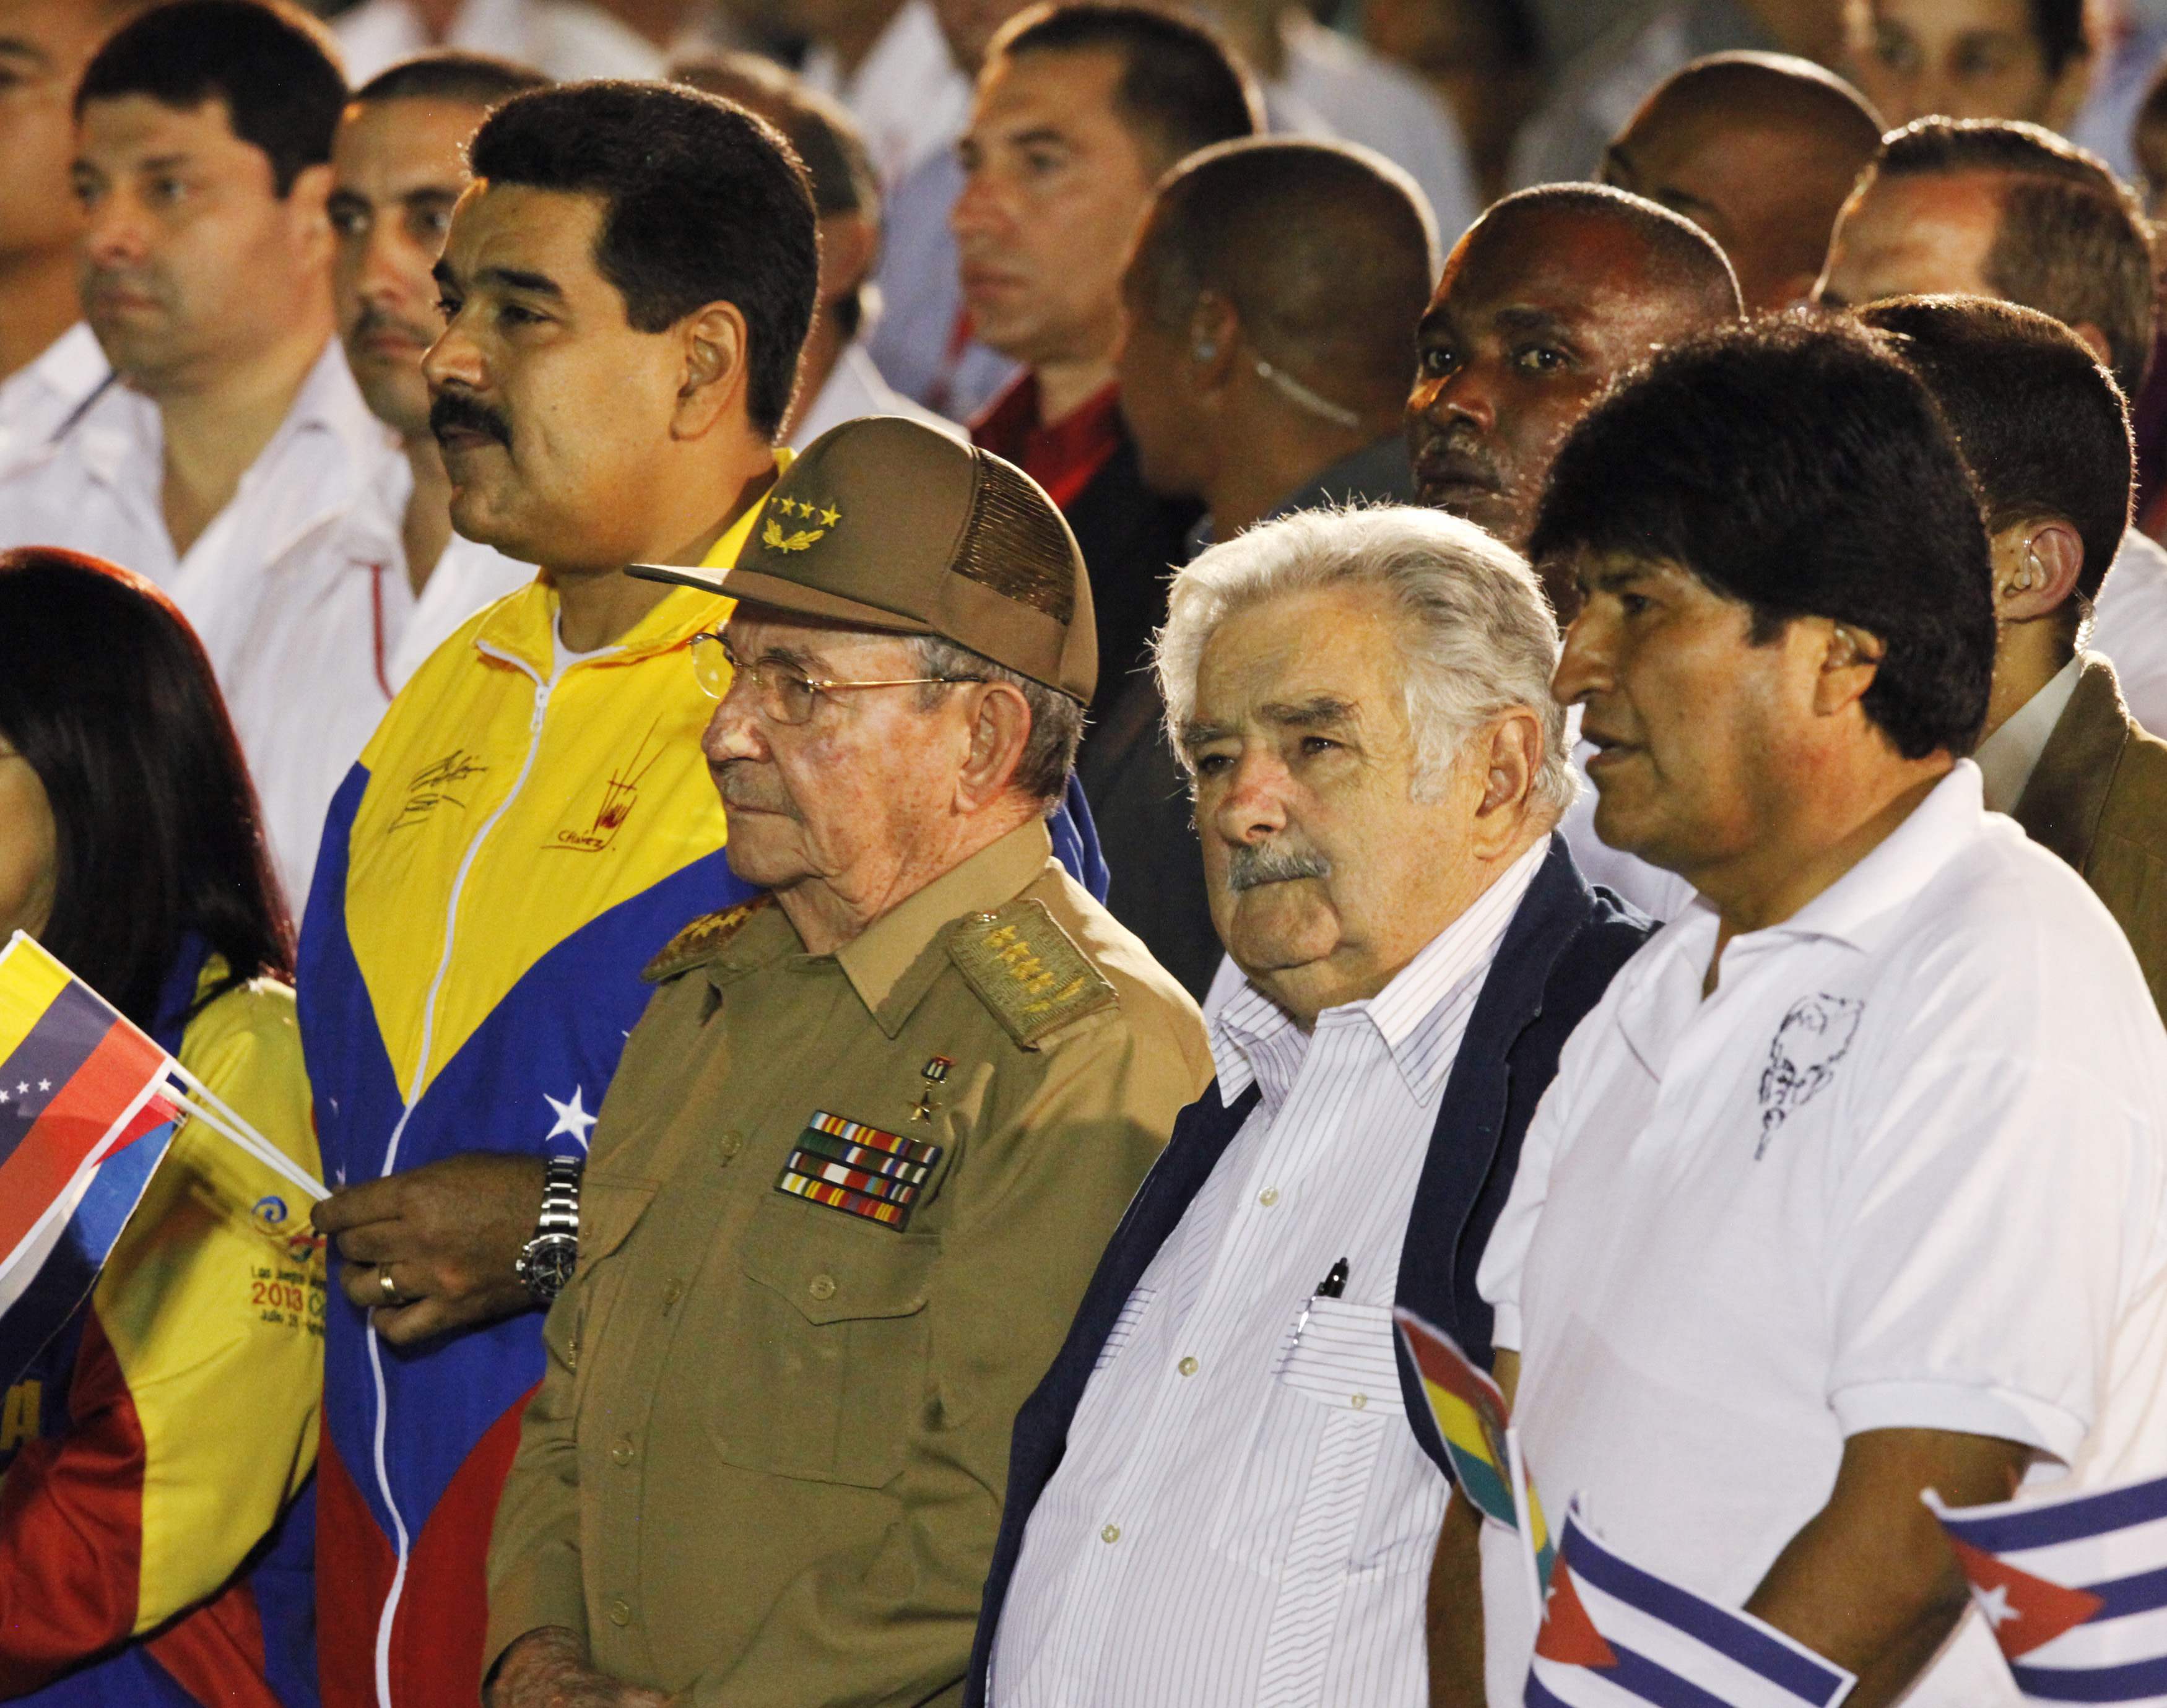 Castro y Maduro interesados en consolidar colaboración económica